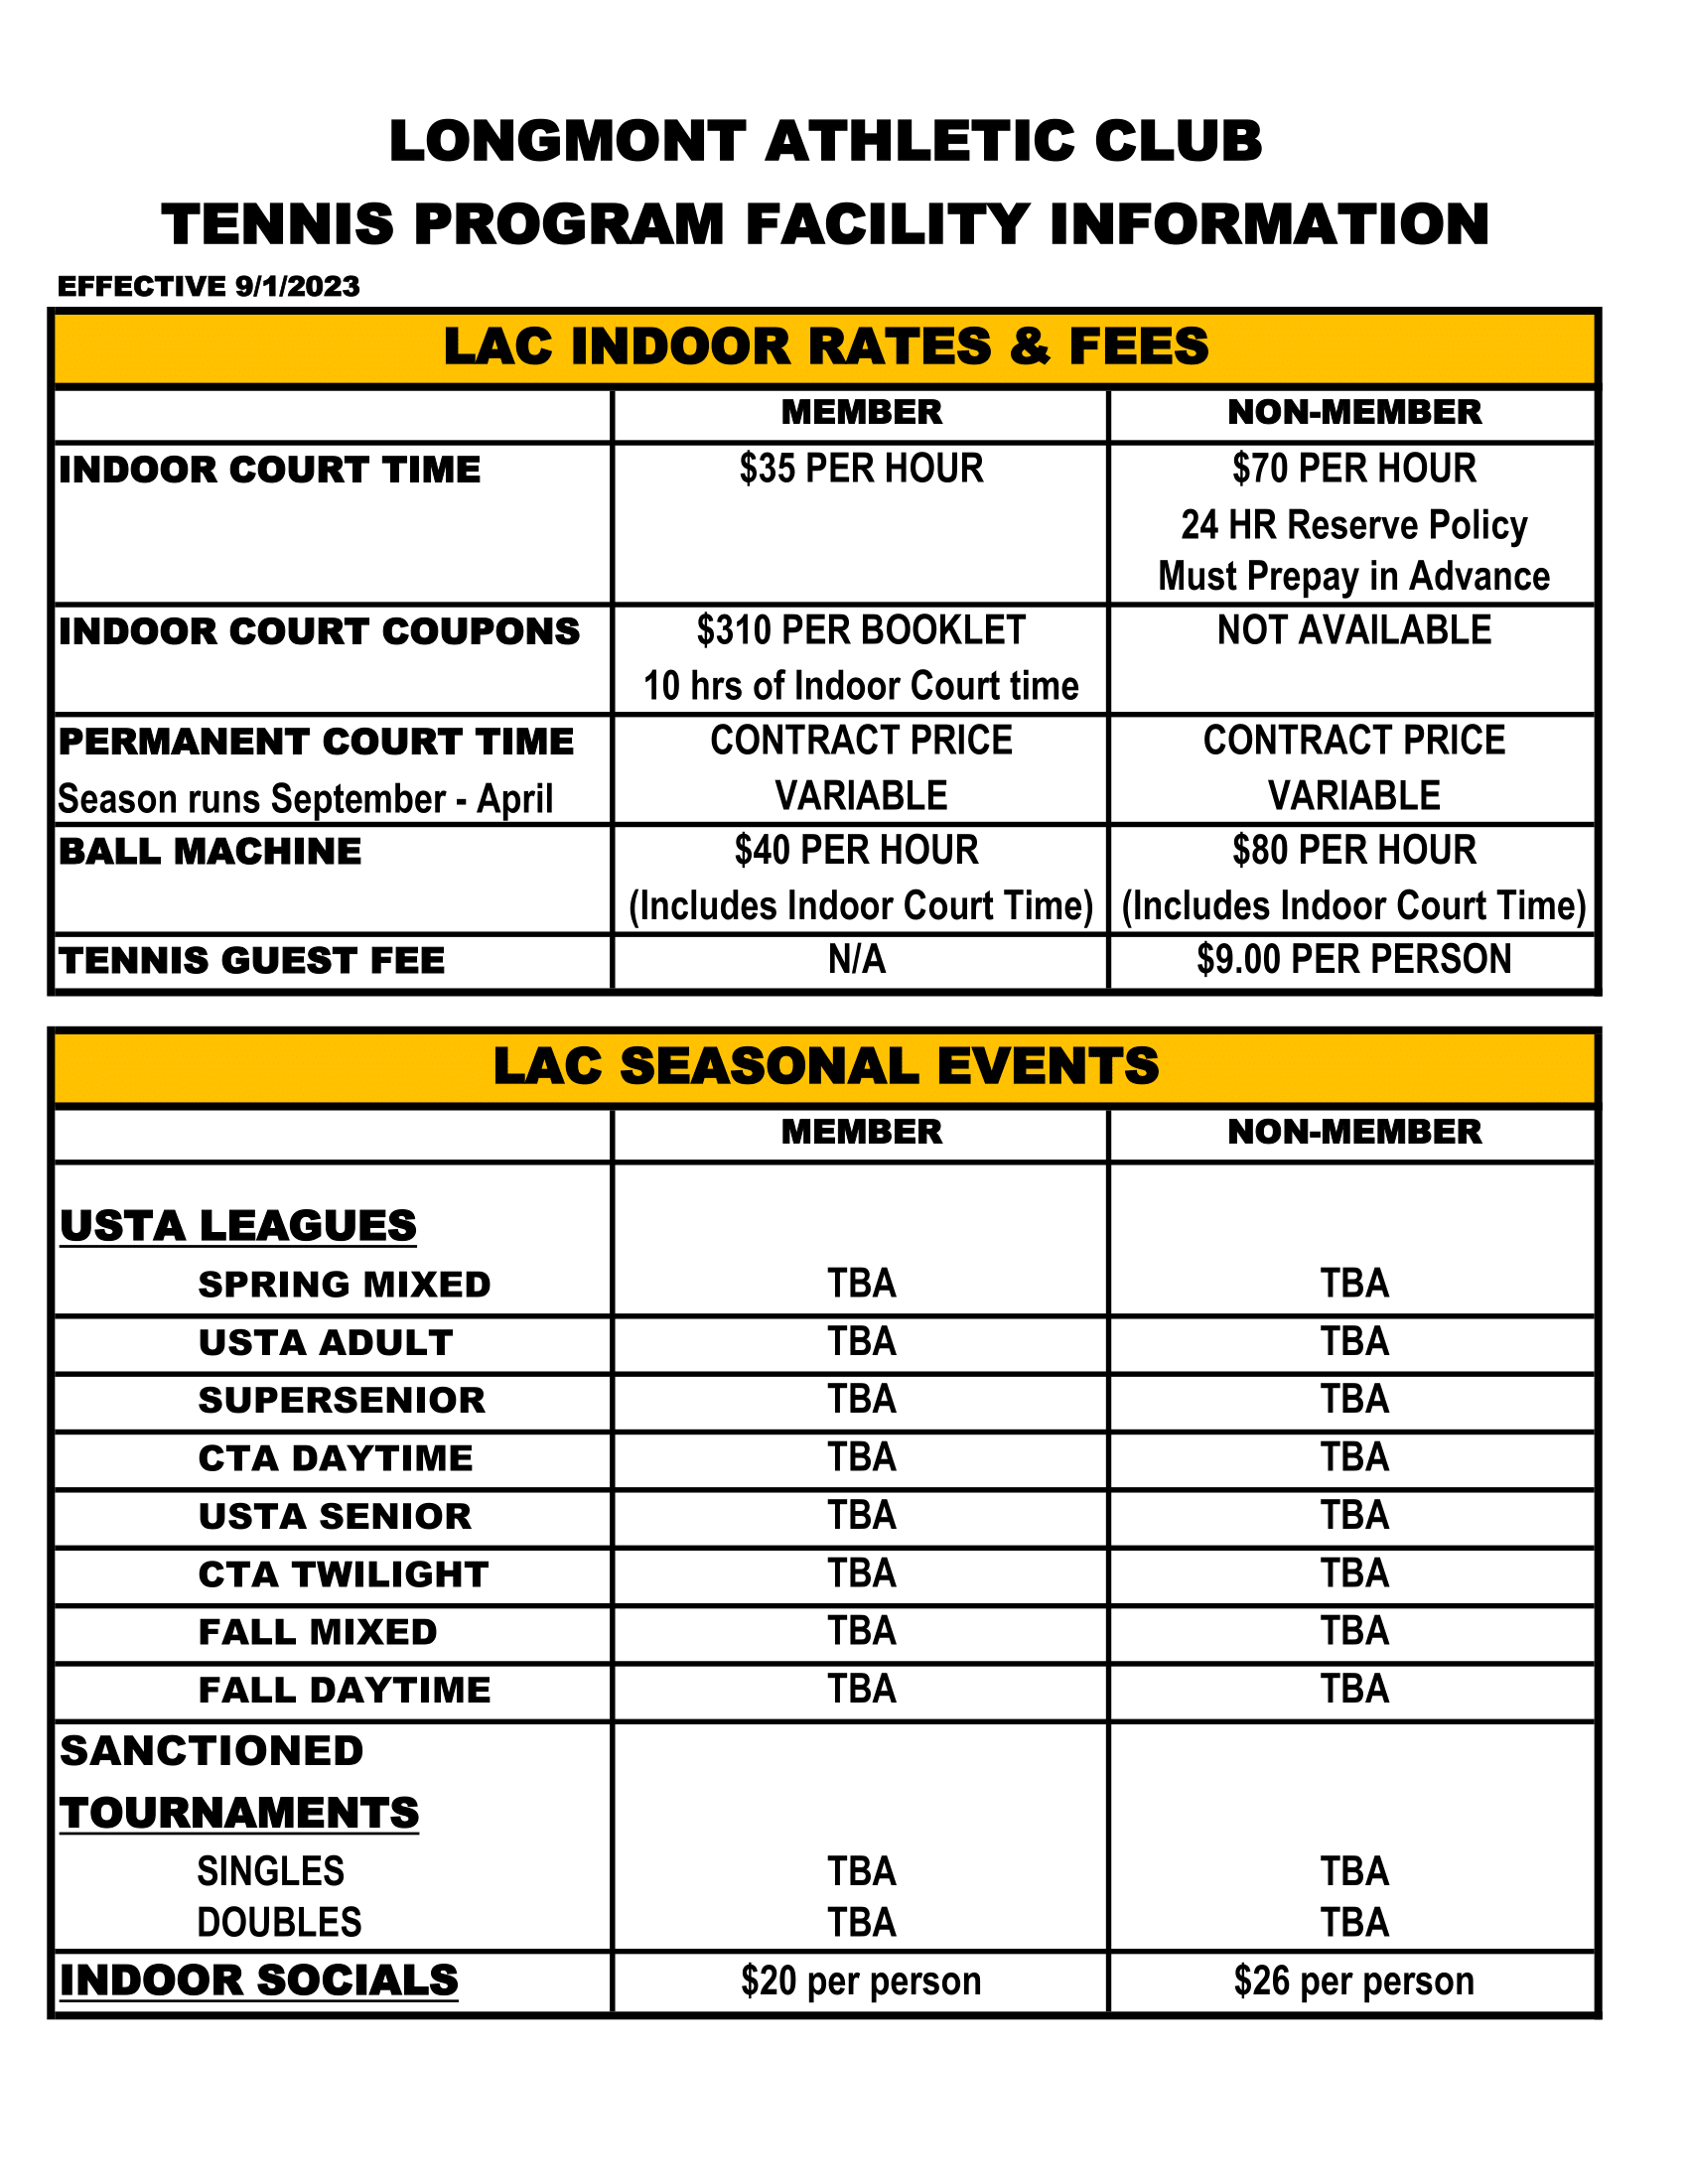 LAC TENNIS LESSON ADULT RATES | Longmont Athletic Club | Longmont Colorado